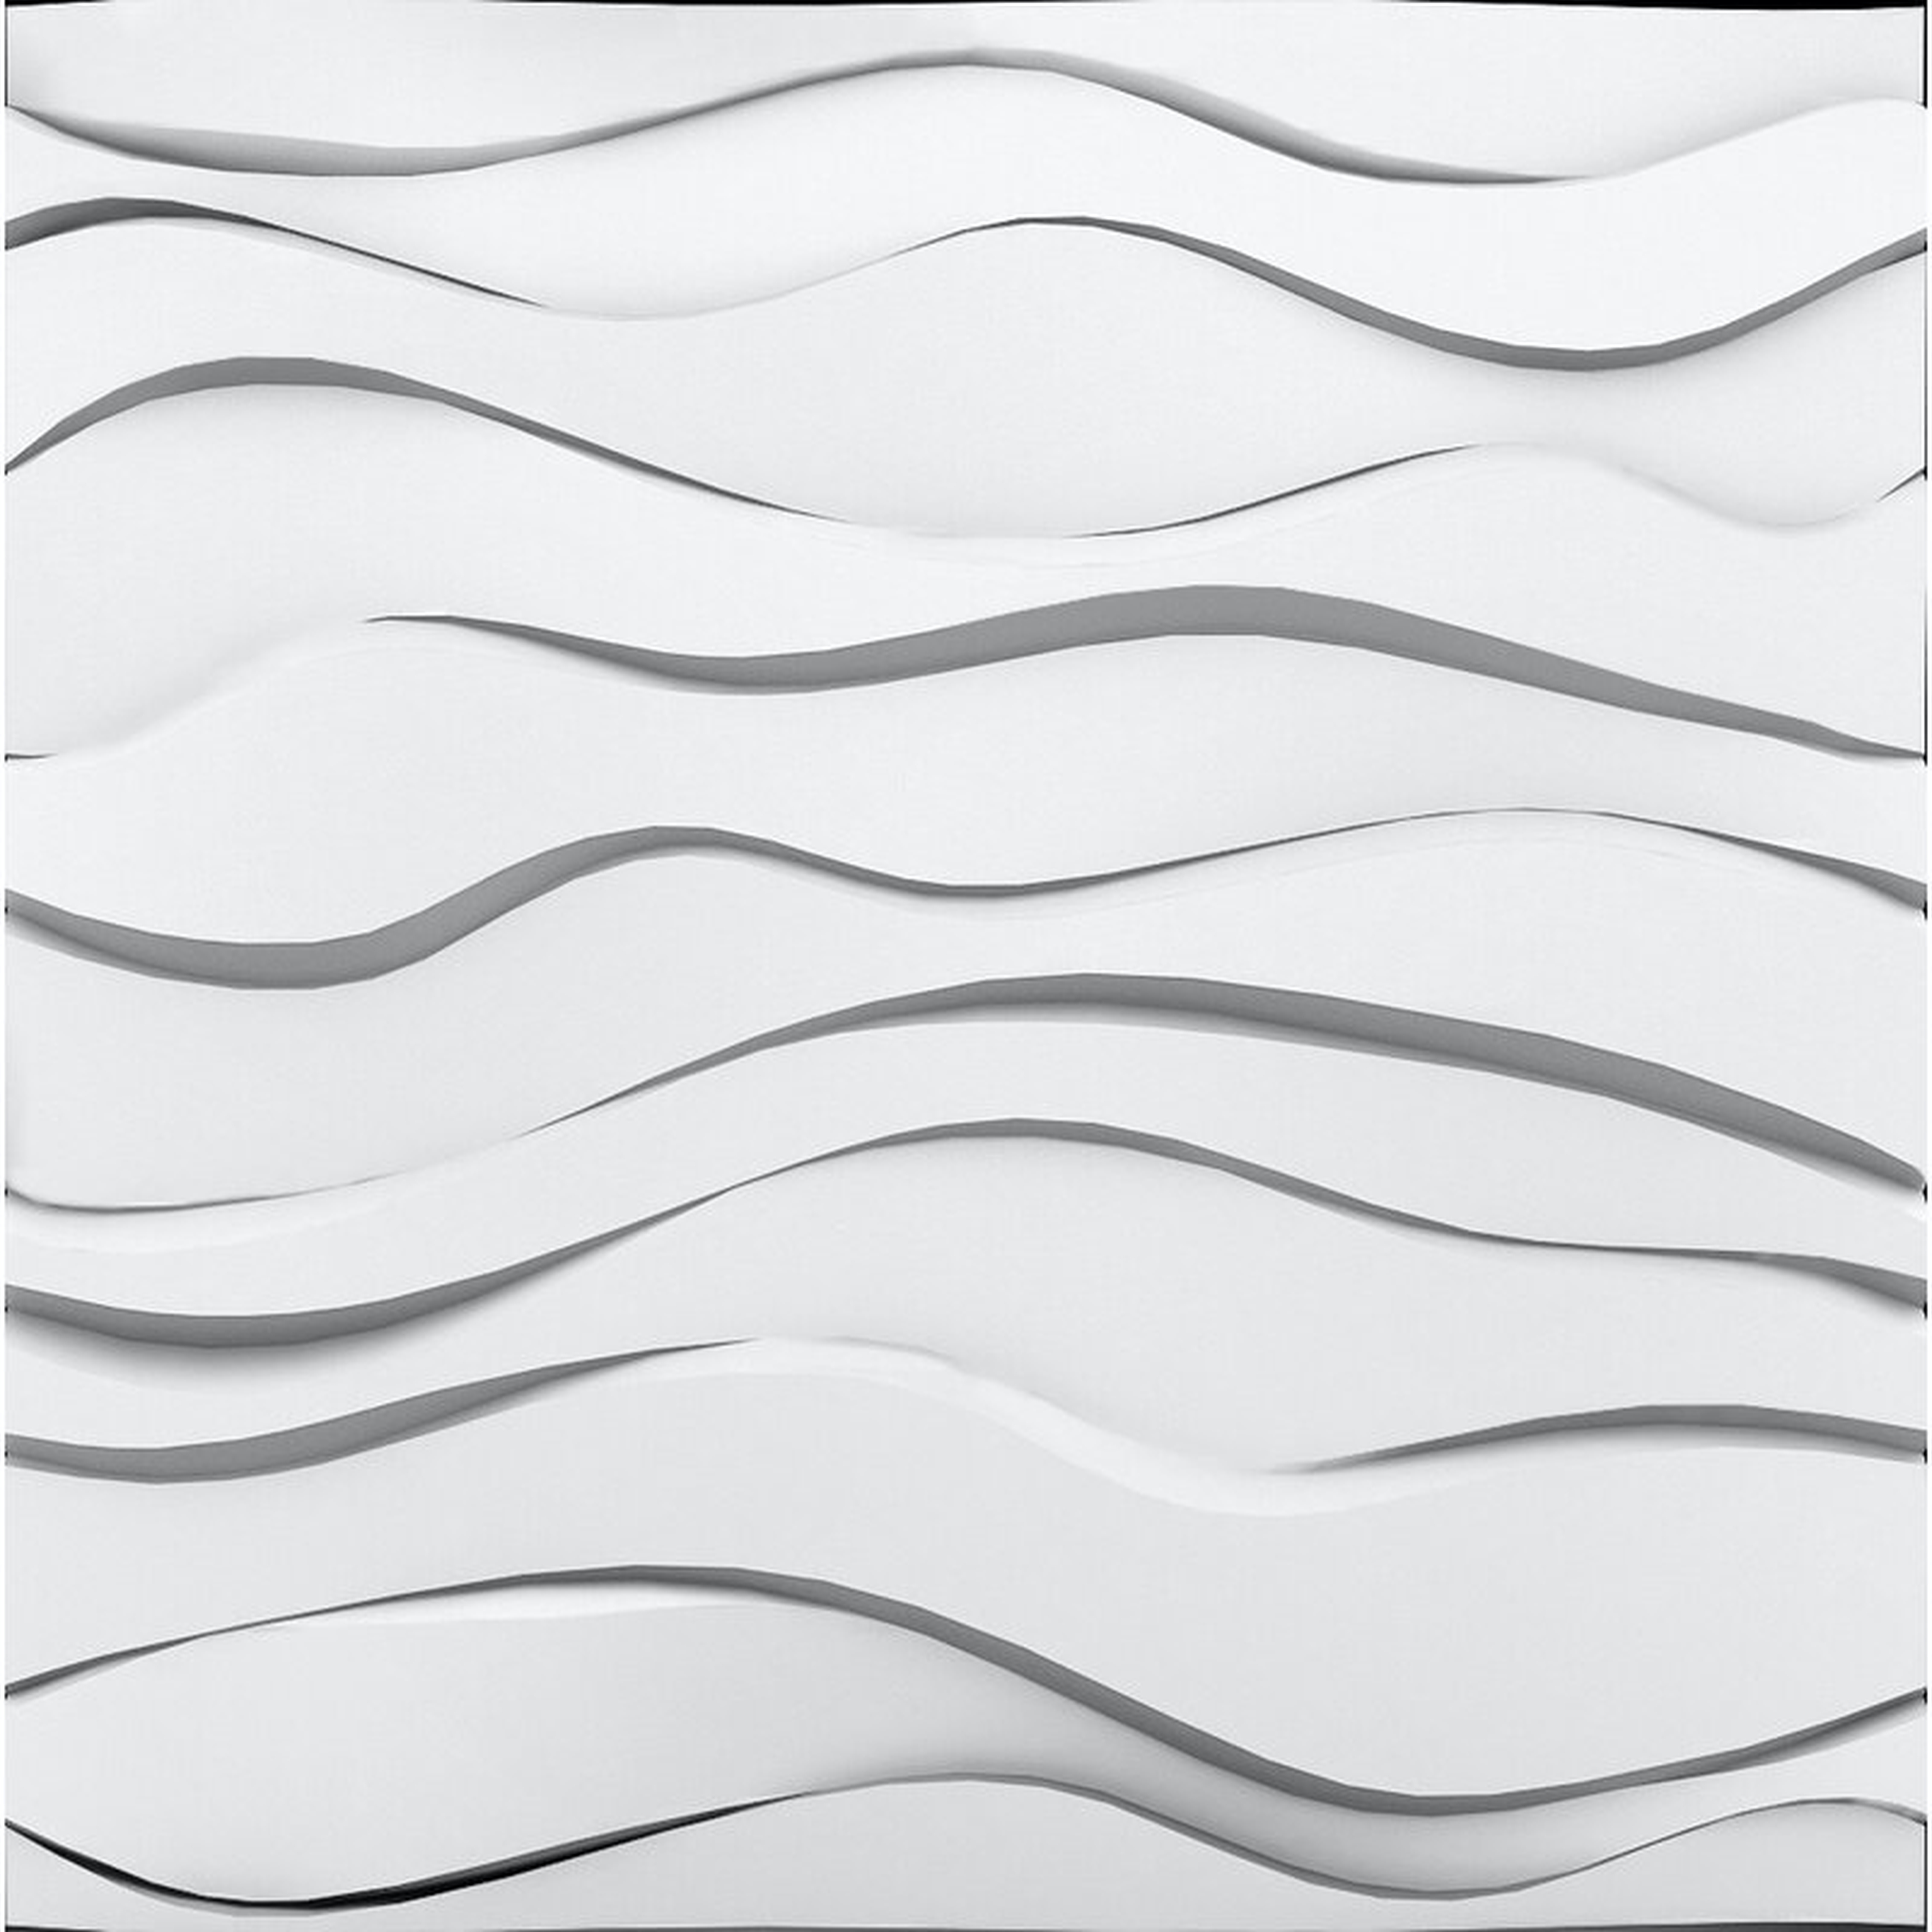 Zephyr 23.75" x 23.75" Foam Wall Paneling in White - Wayfair